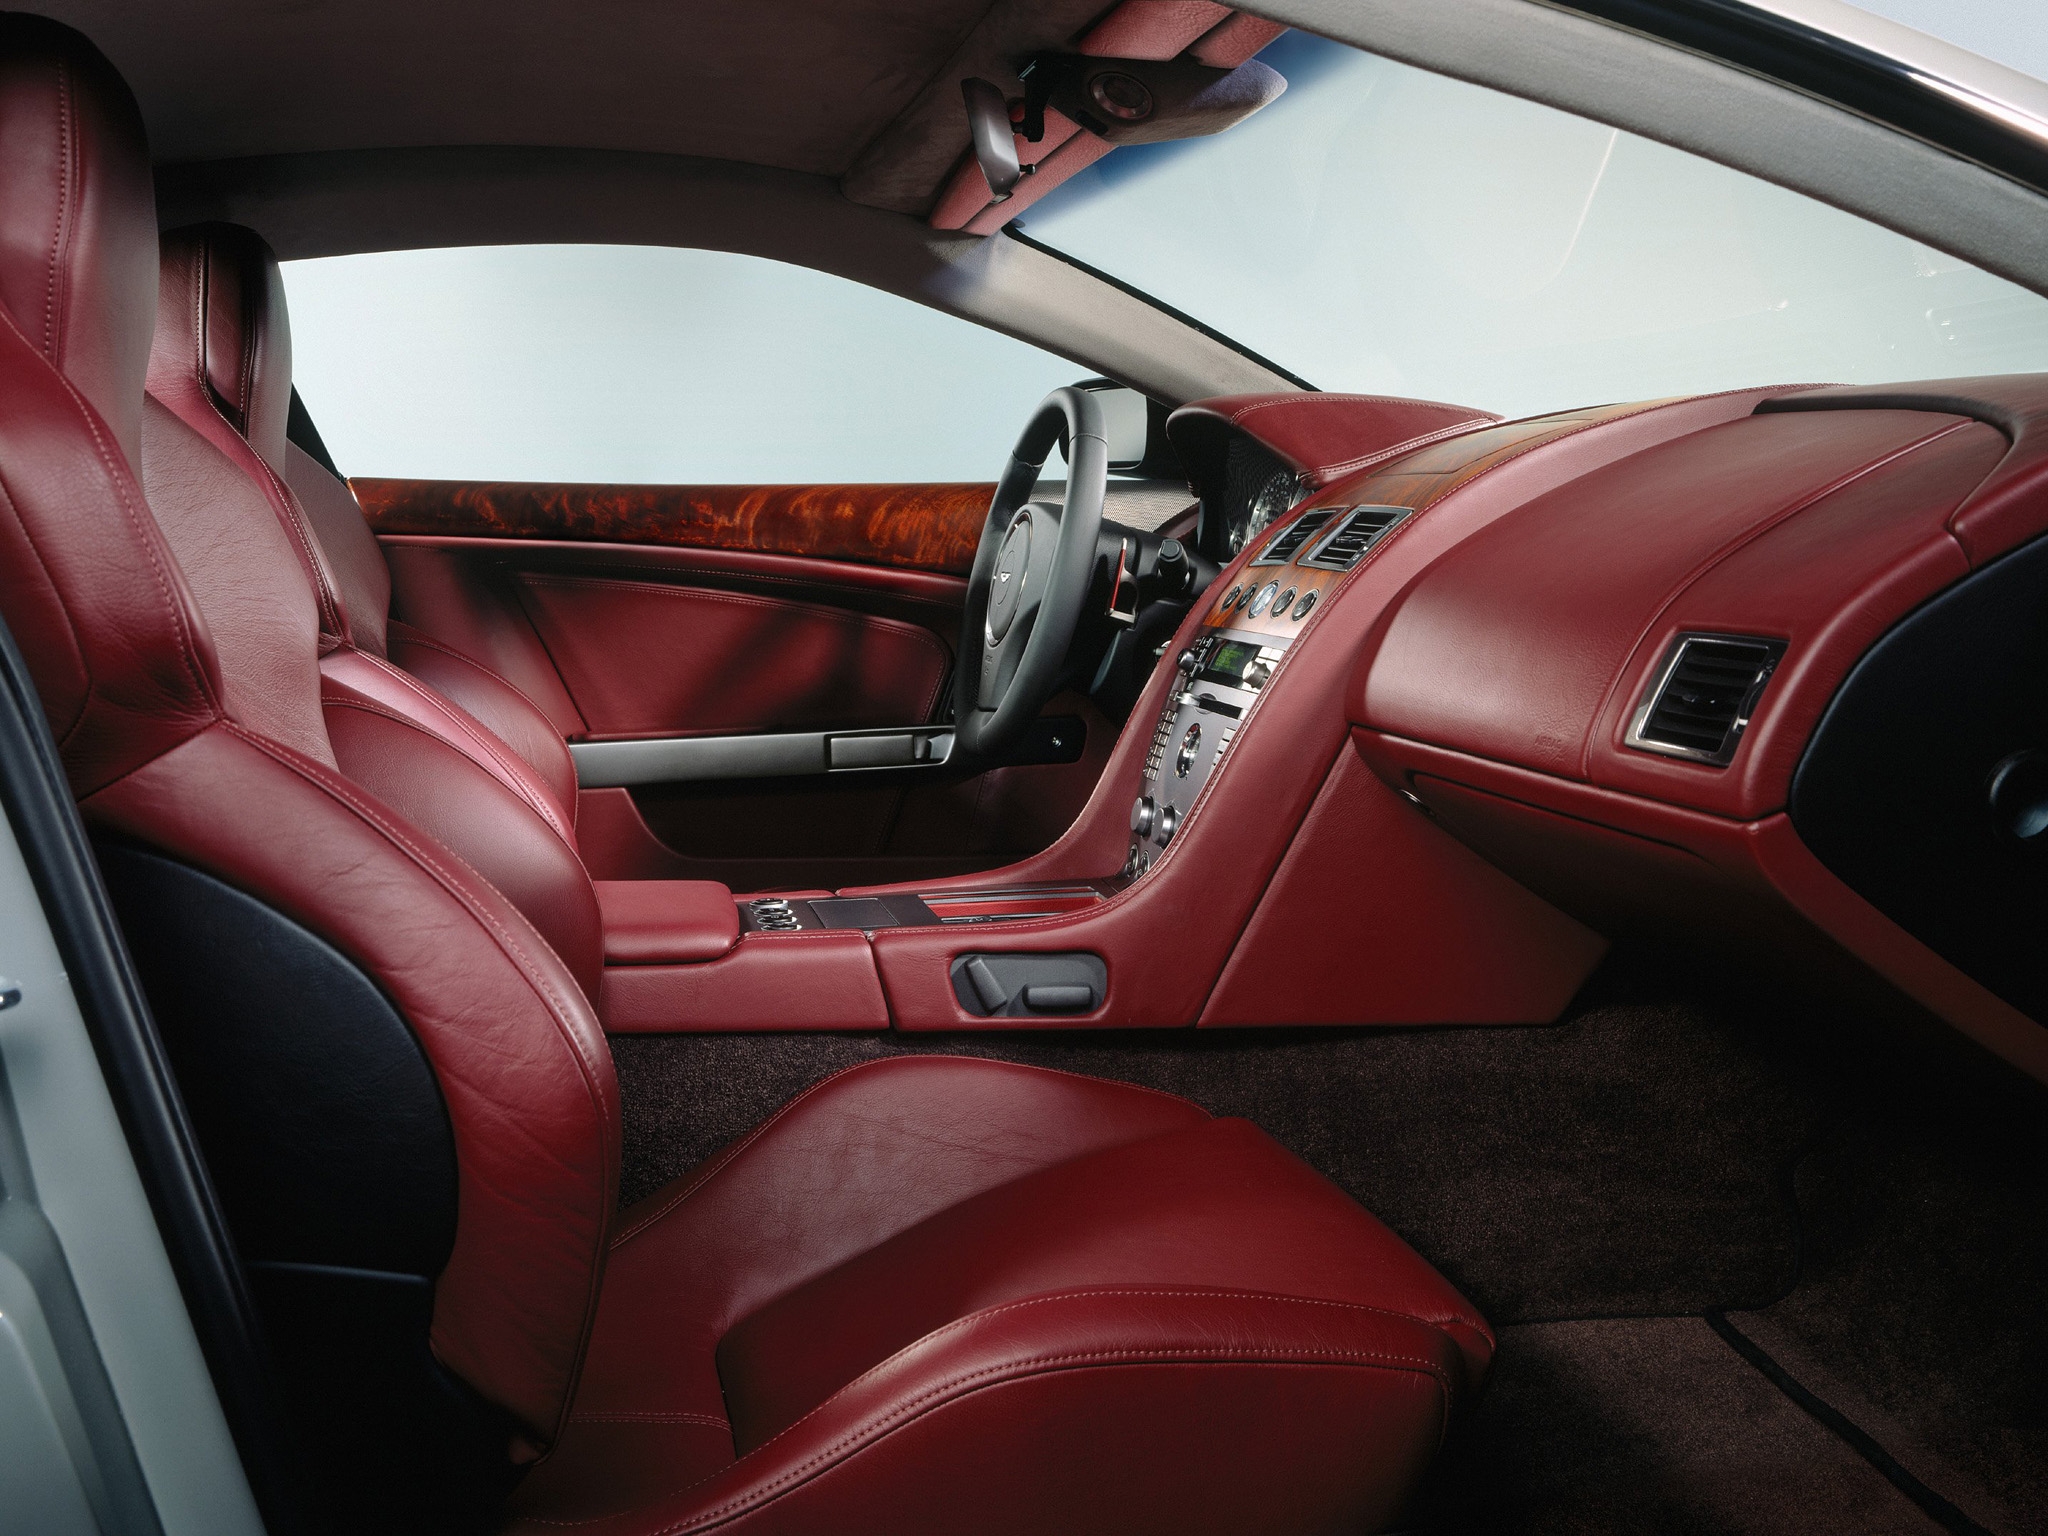 cars, interior, aston martin, red, steering wheel, rudder, salon, 2004, db9 Aesthetic wallpaper